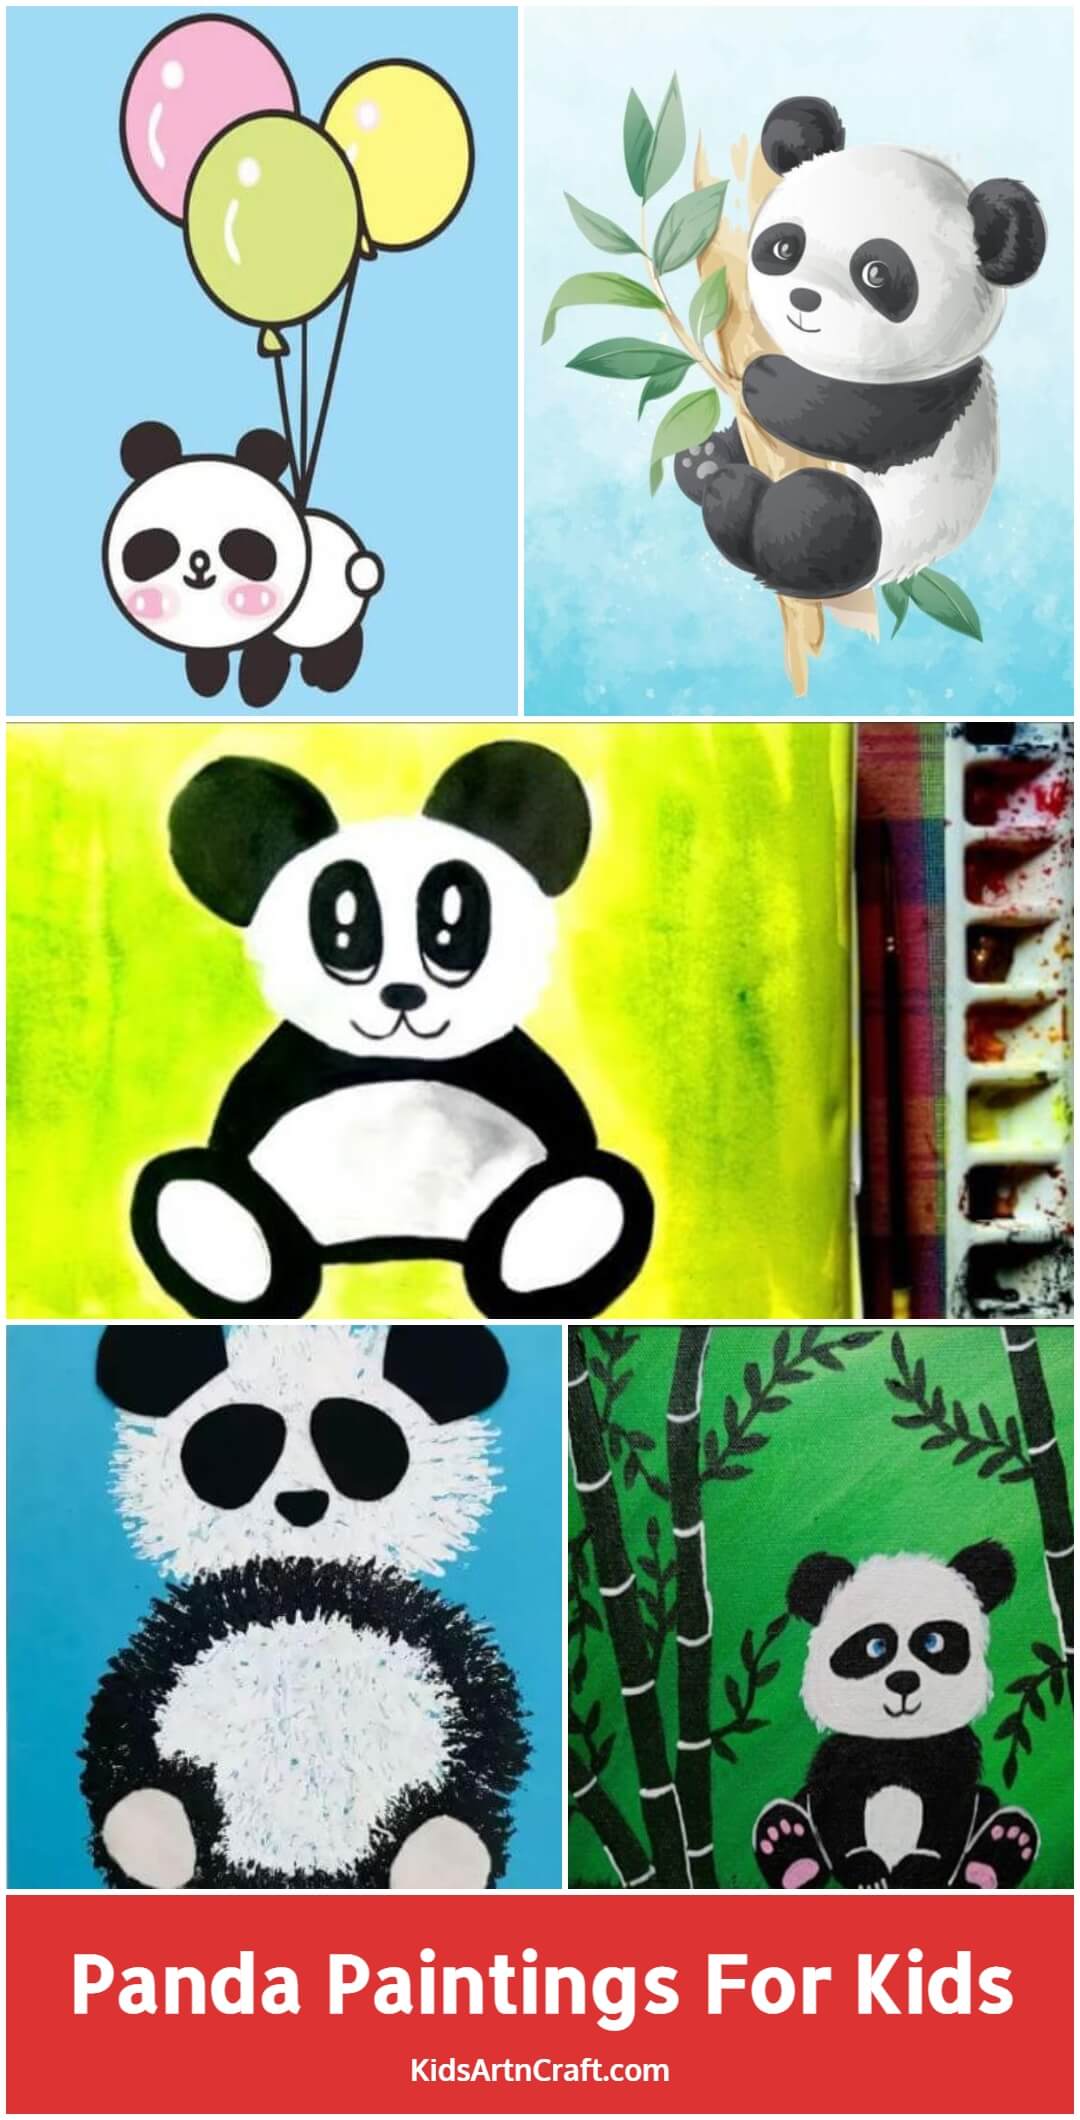 Panda Paintings For Kids